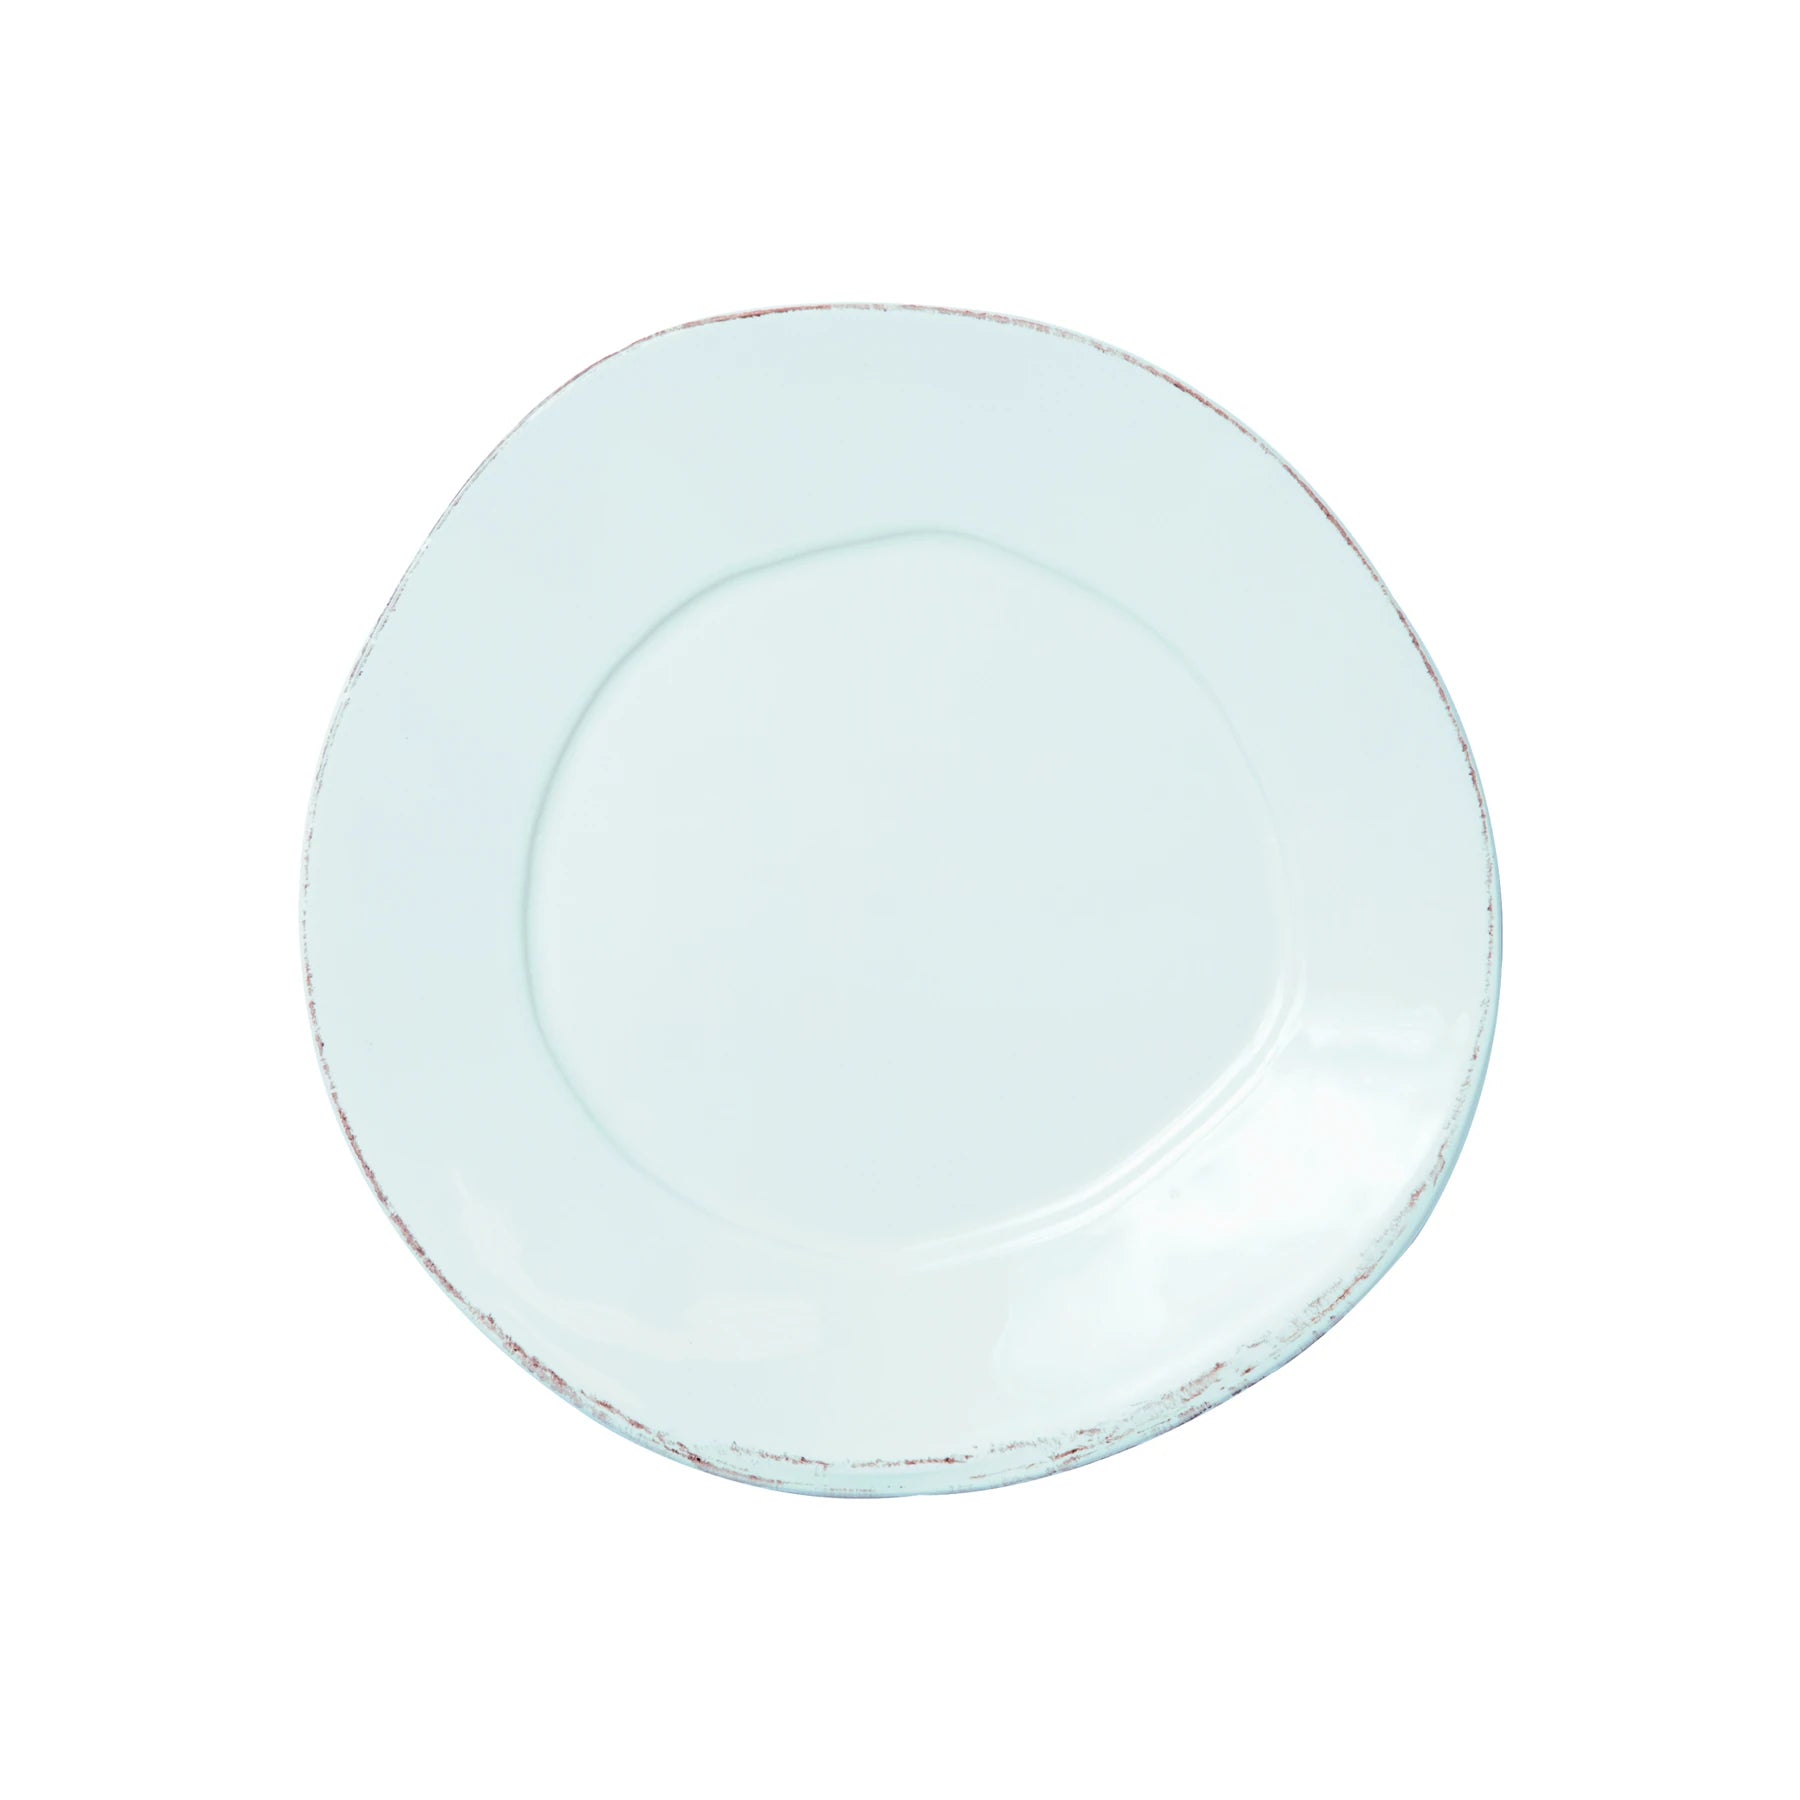 Lastra Aqua Salad Plate